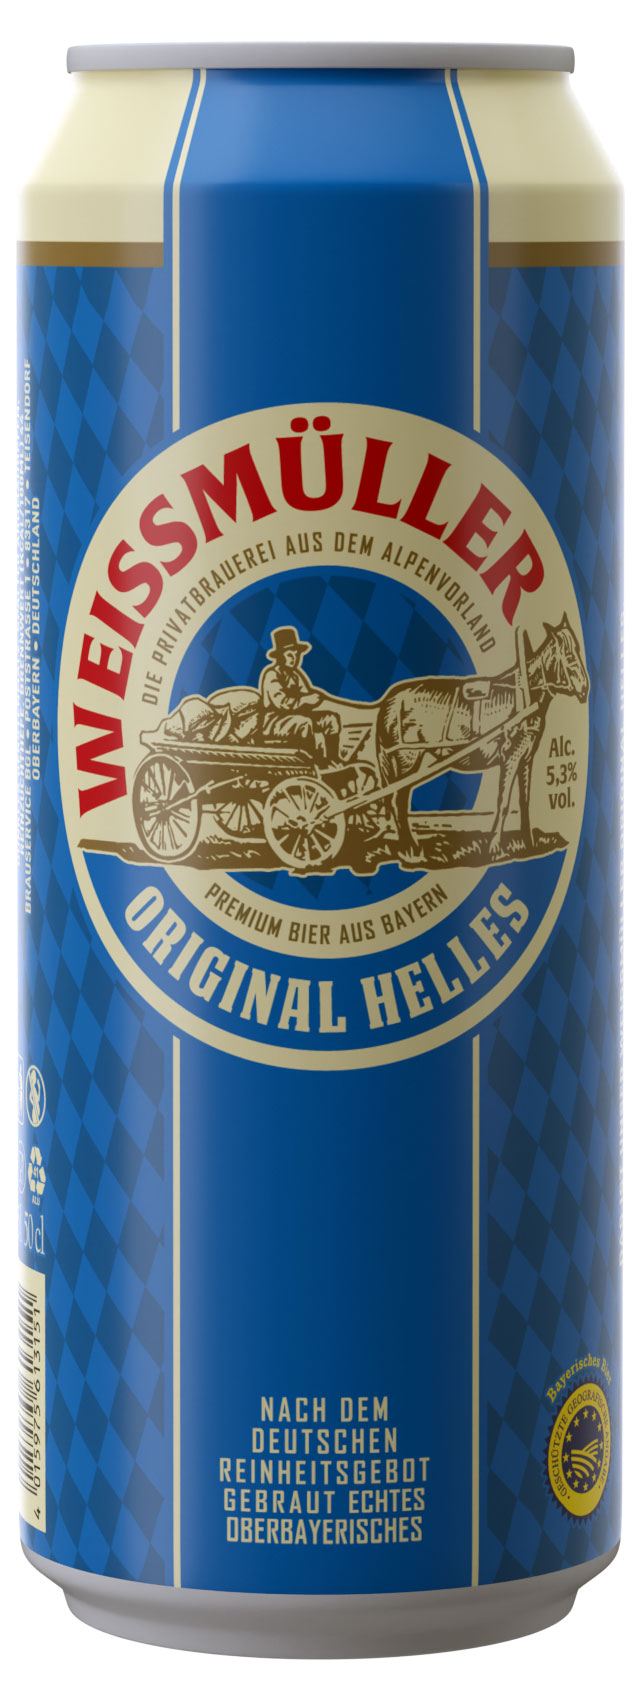 Пиво светлое Weissmuller Original Helles фильтрованное 5,3%, 0,5 л